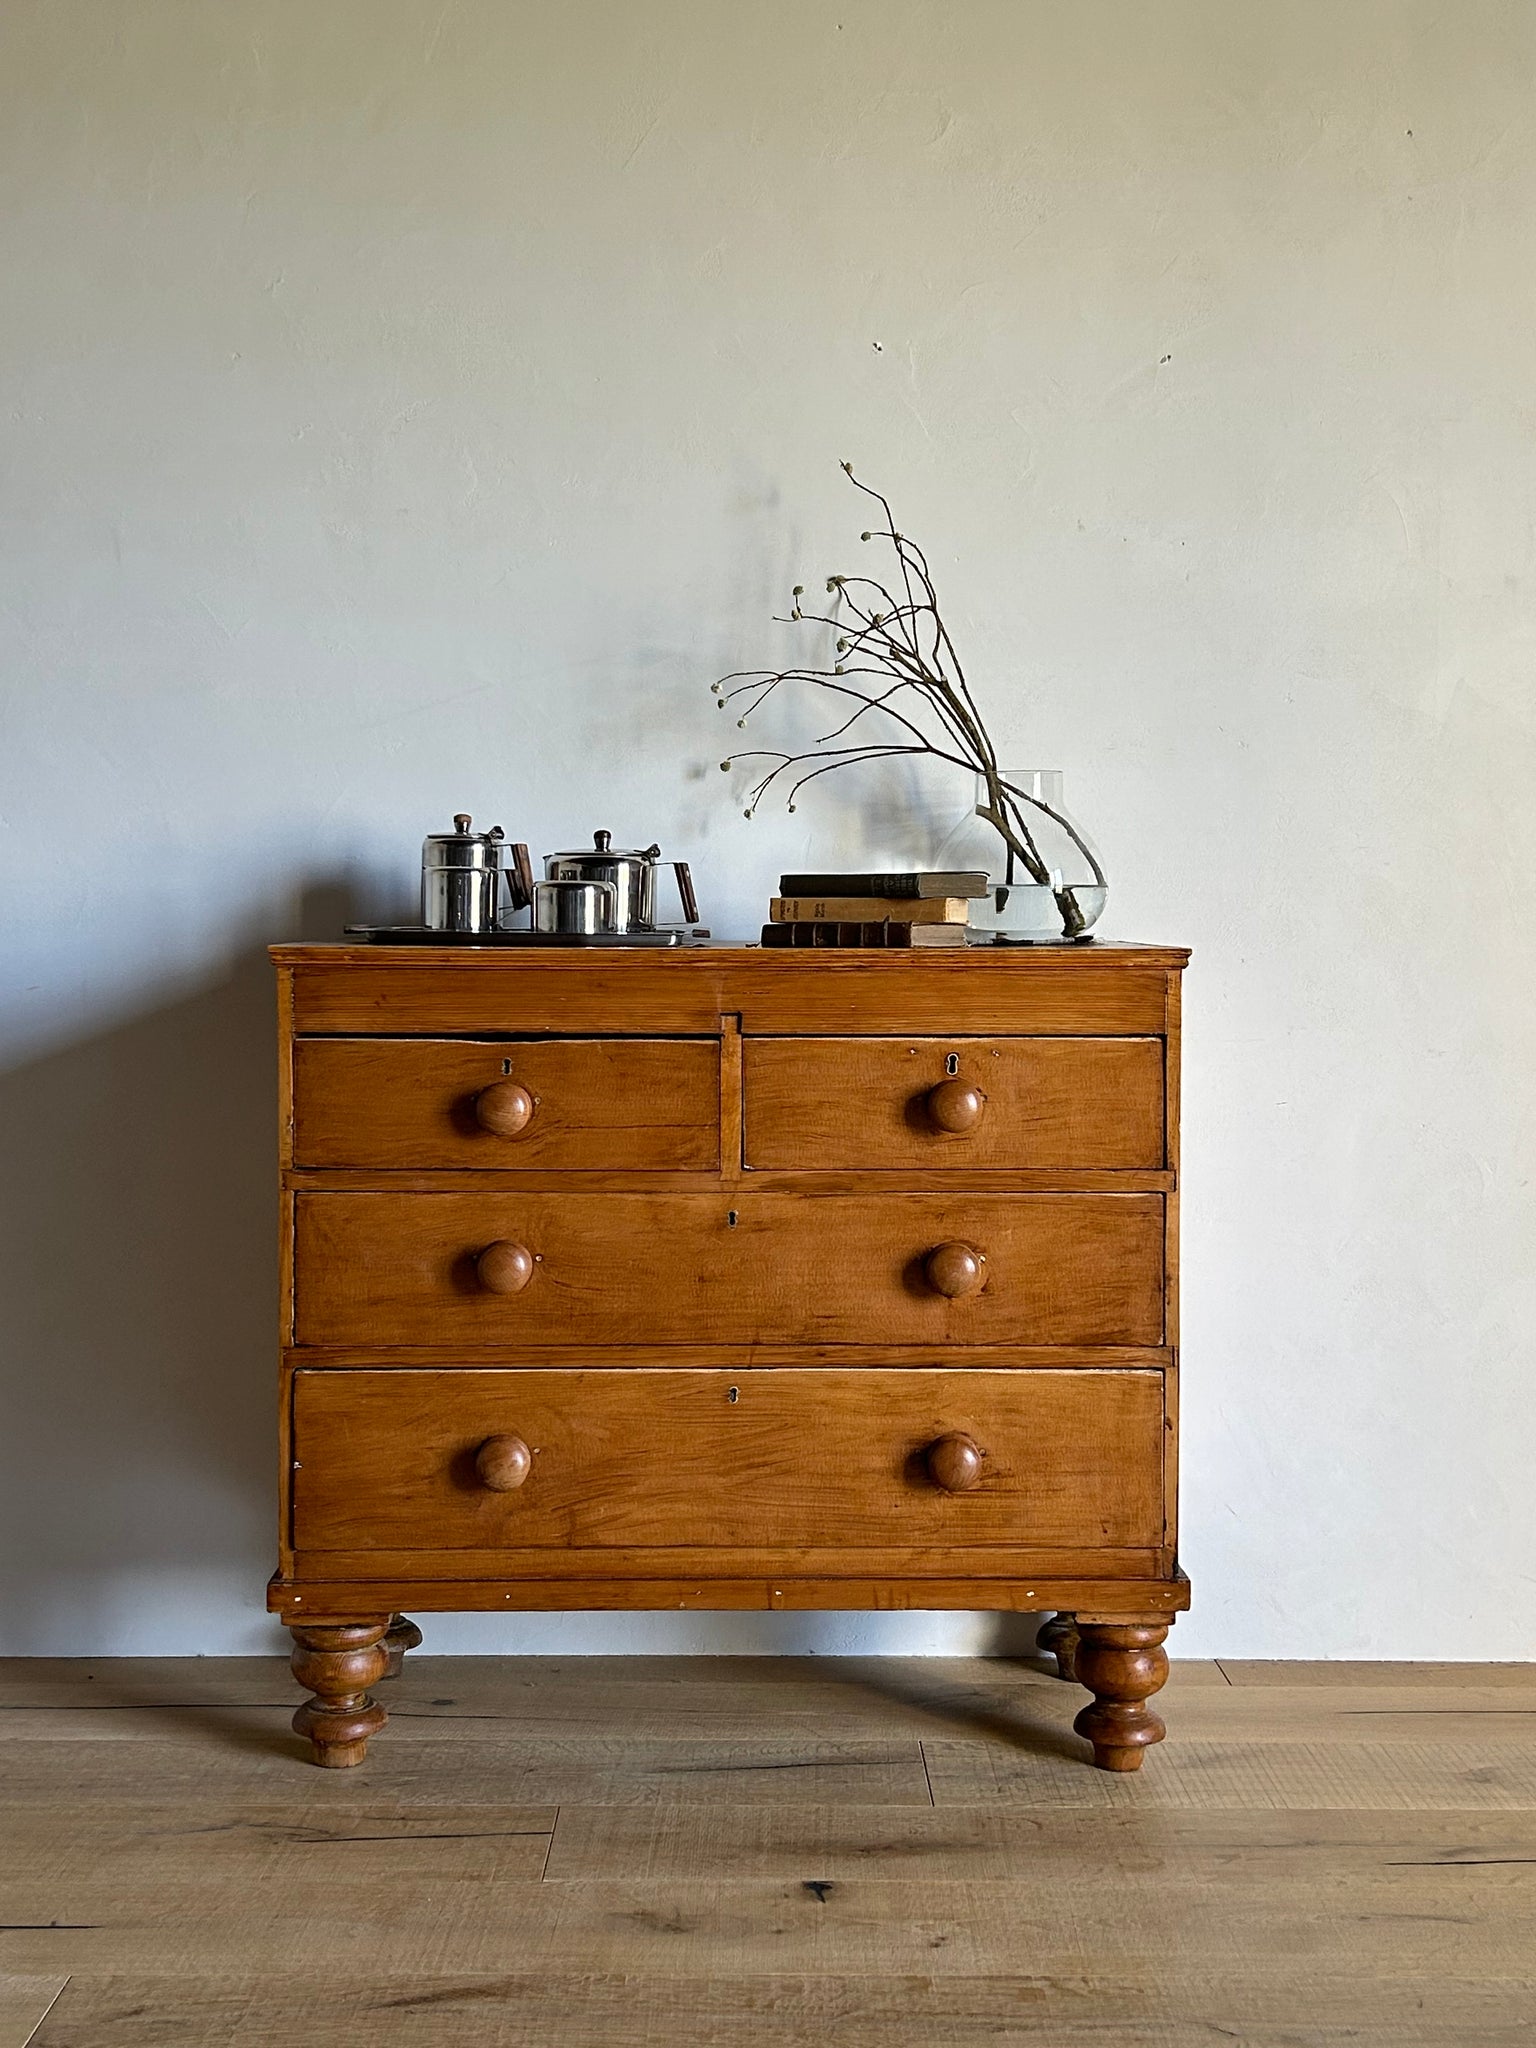 オールド パイン チェスト / old pine chest of drawers #0294 – SCOUT 